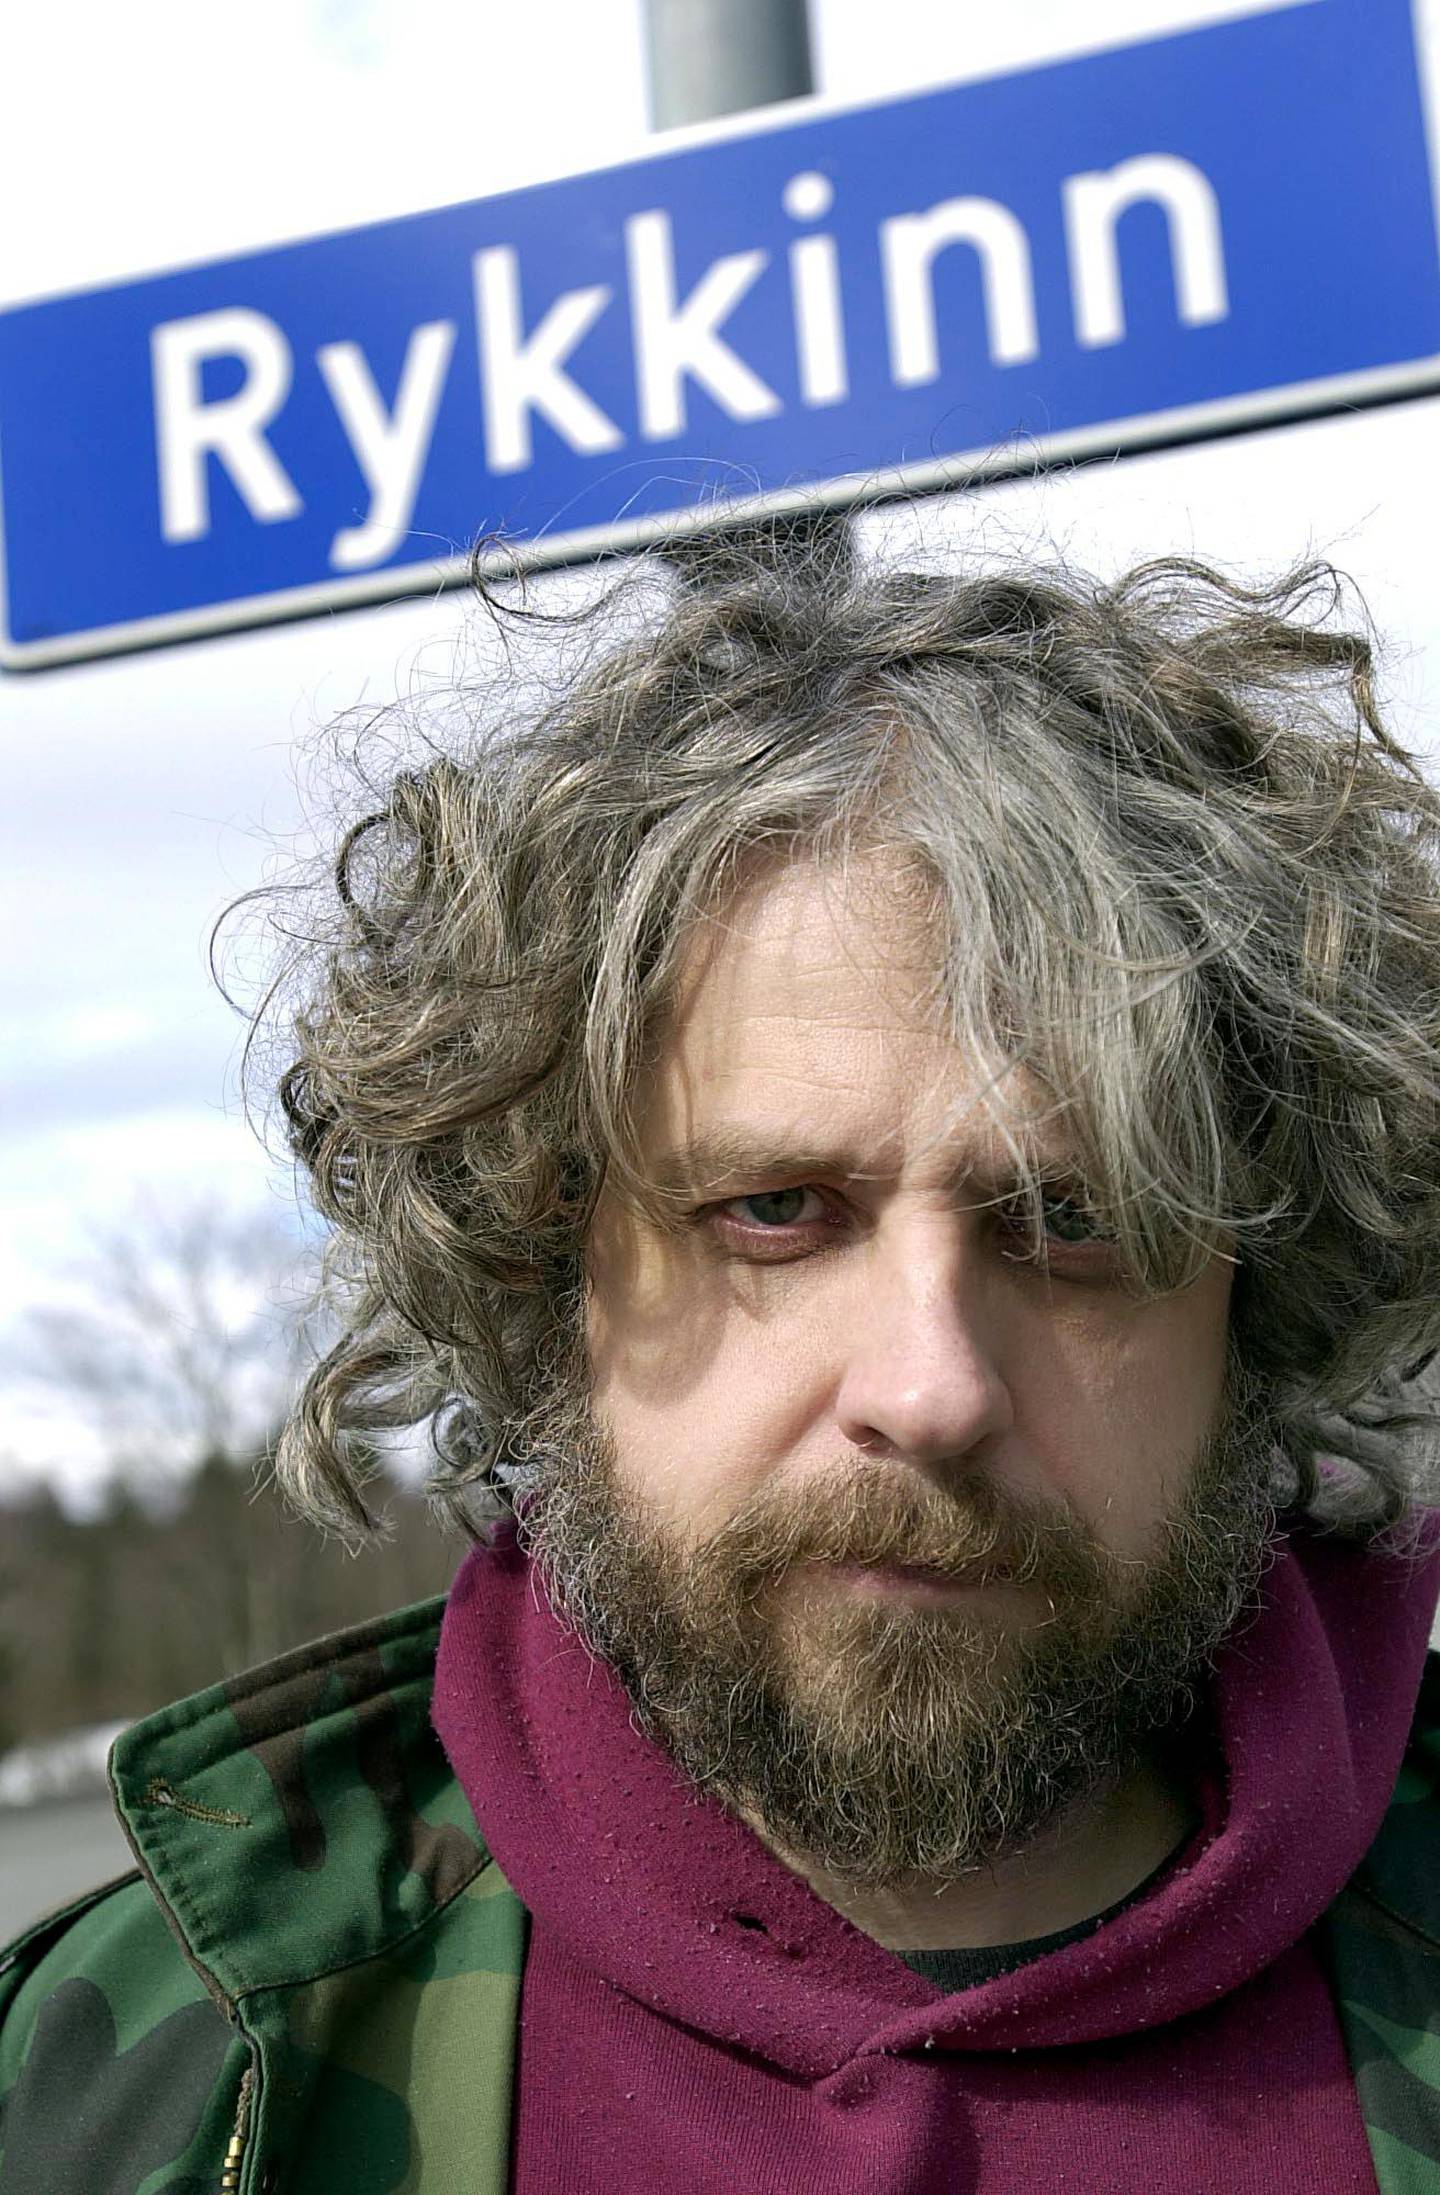 Bård Torgersen i forb. med utgivelse av CD'n:  "1349 Rykkinn" om sine barndomstrakter.
Rykkinn, 2. april 2003.  Foto: Mimsy Møller